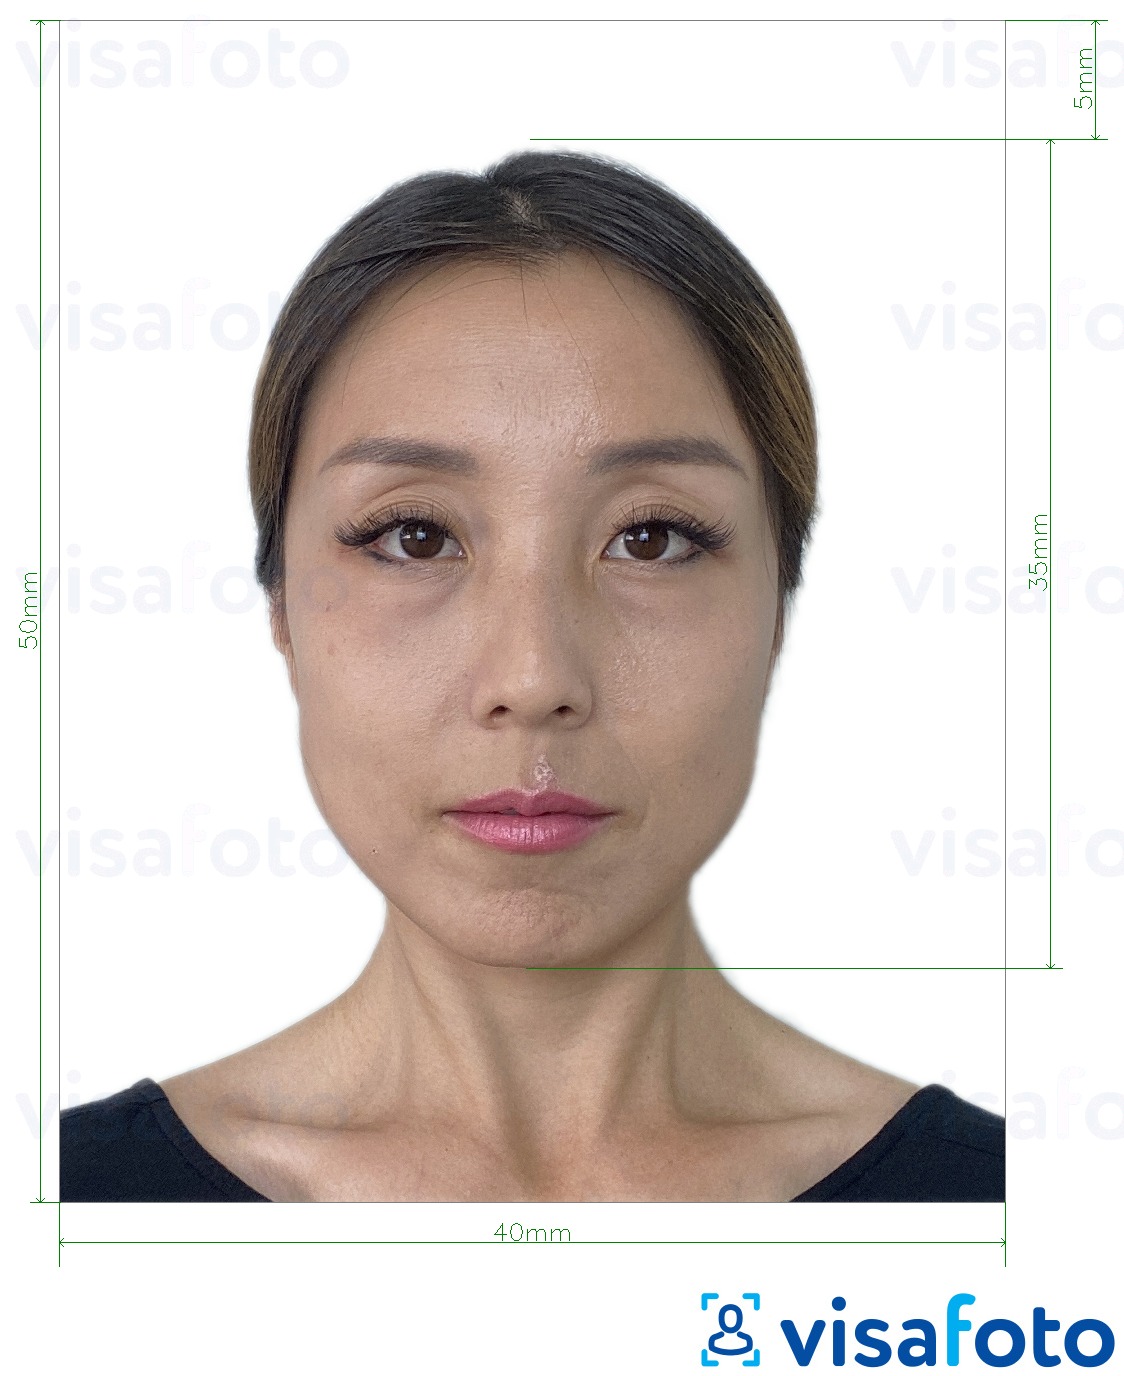 写真の例 香港IDカード 4x5cm 正確なサイズ仕様に